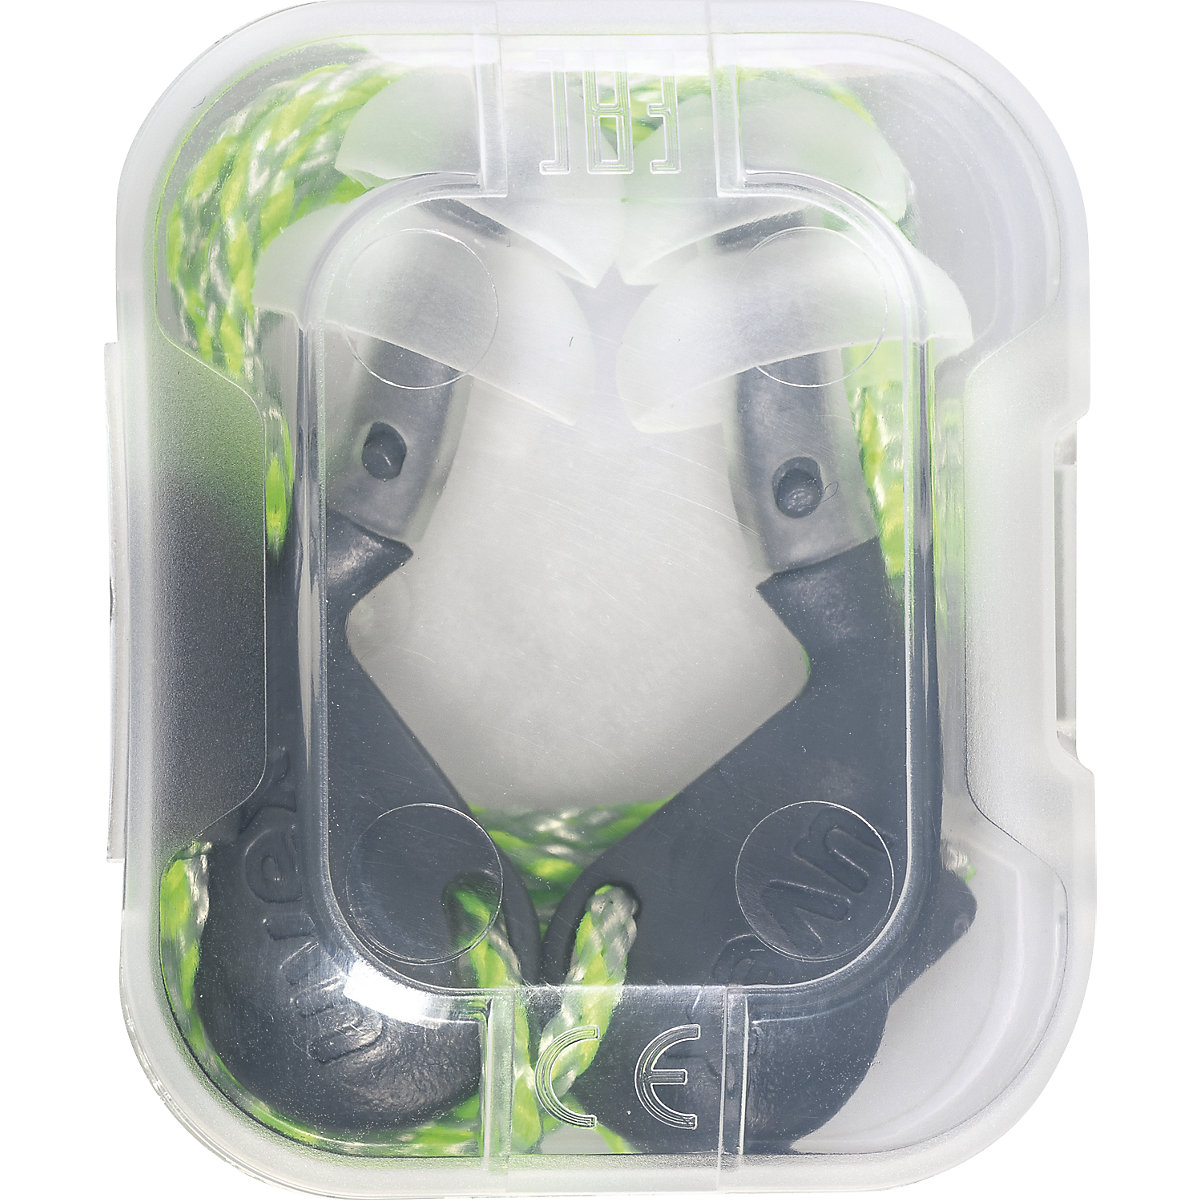 Tapones reutilizables con cordón para los oídos xact-fit multi – Uvex